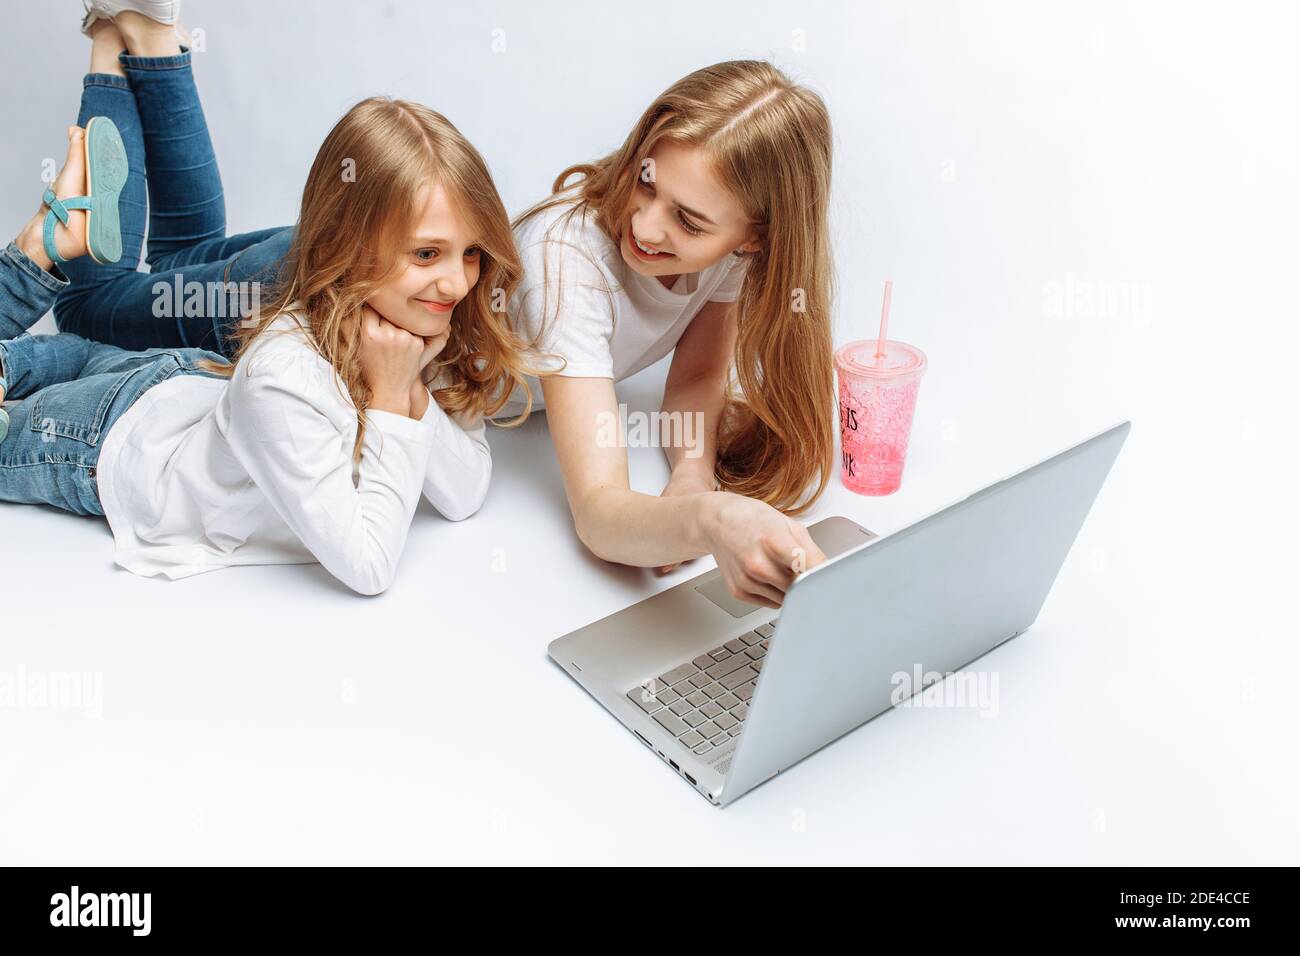 Schwester oder Mutter mit Tochter Film ansehen, oder online einkaufen, Studio Stockfoto